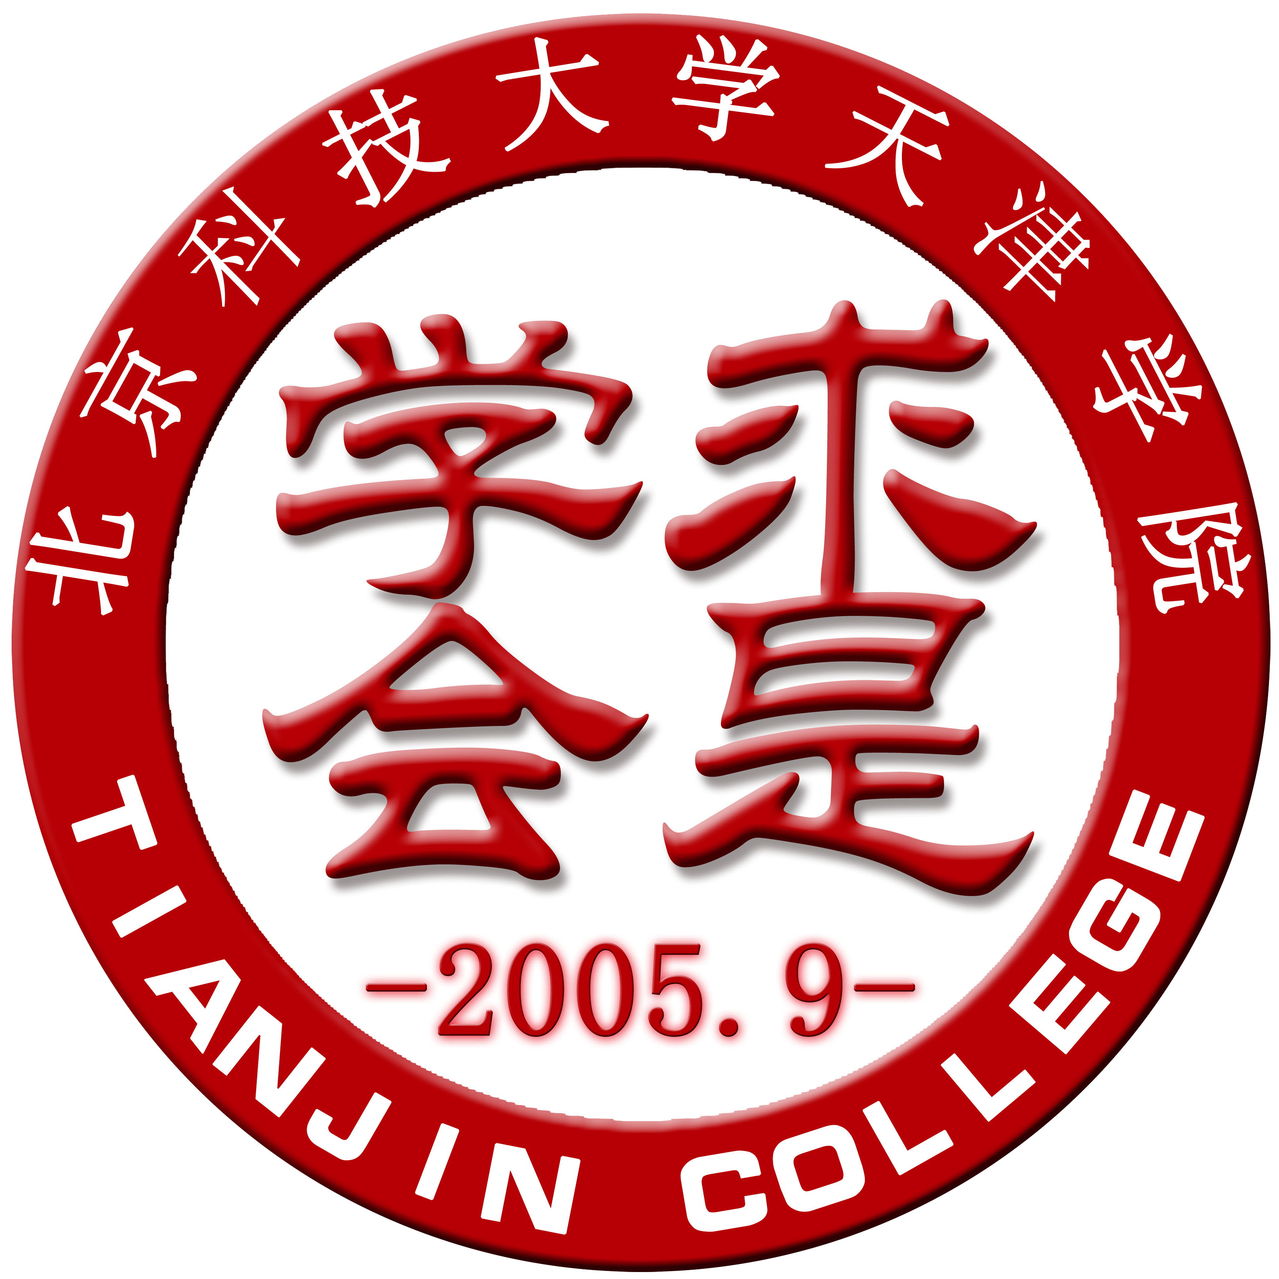 北京科技大學天津學院求是學會會徽